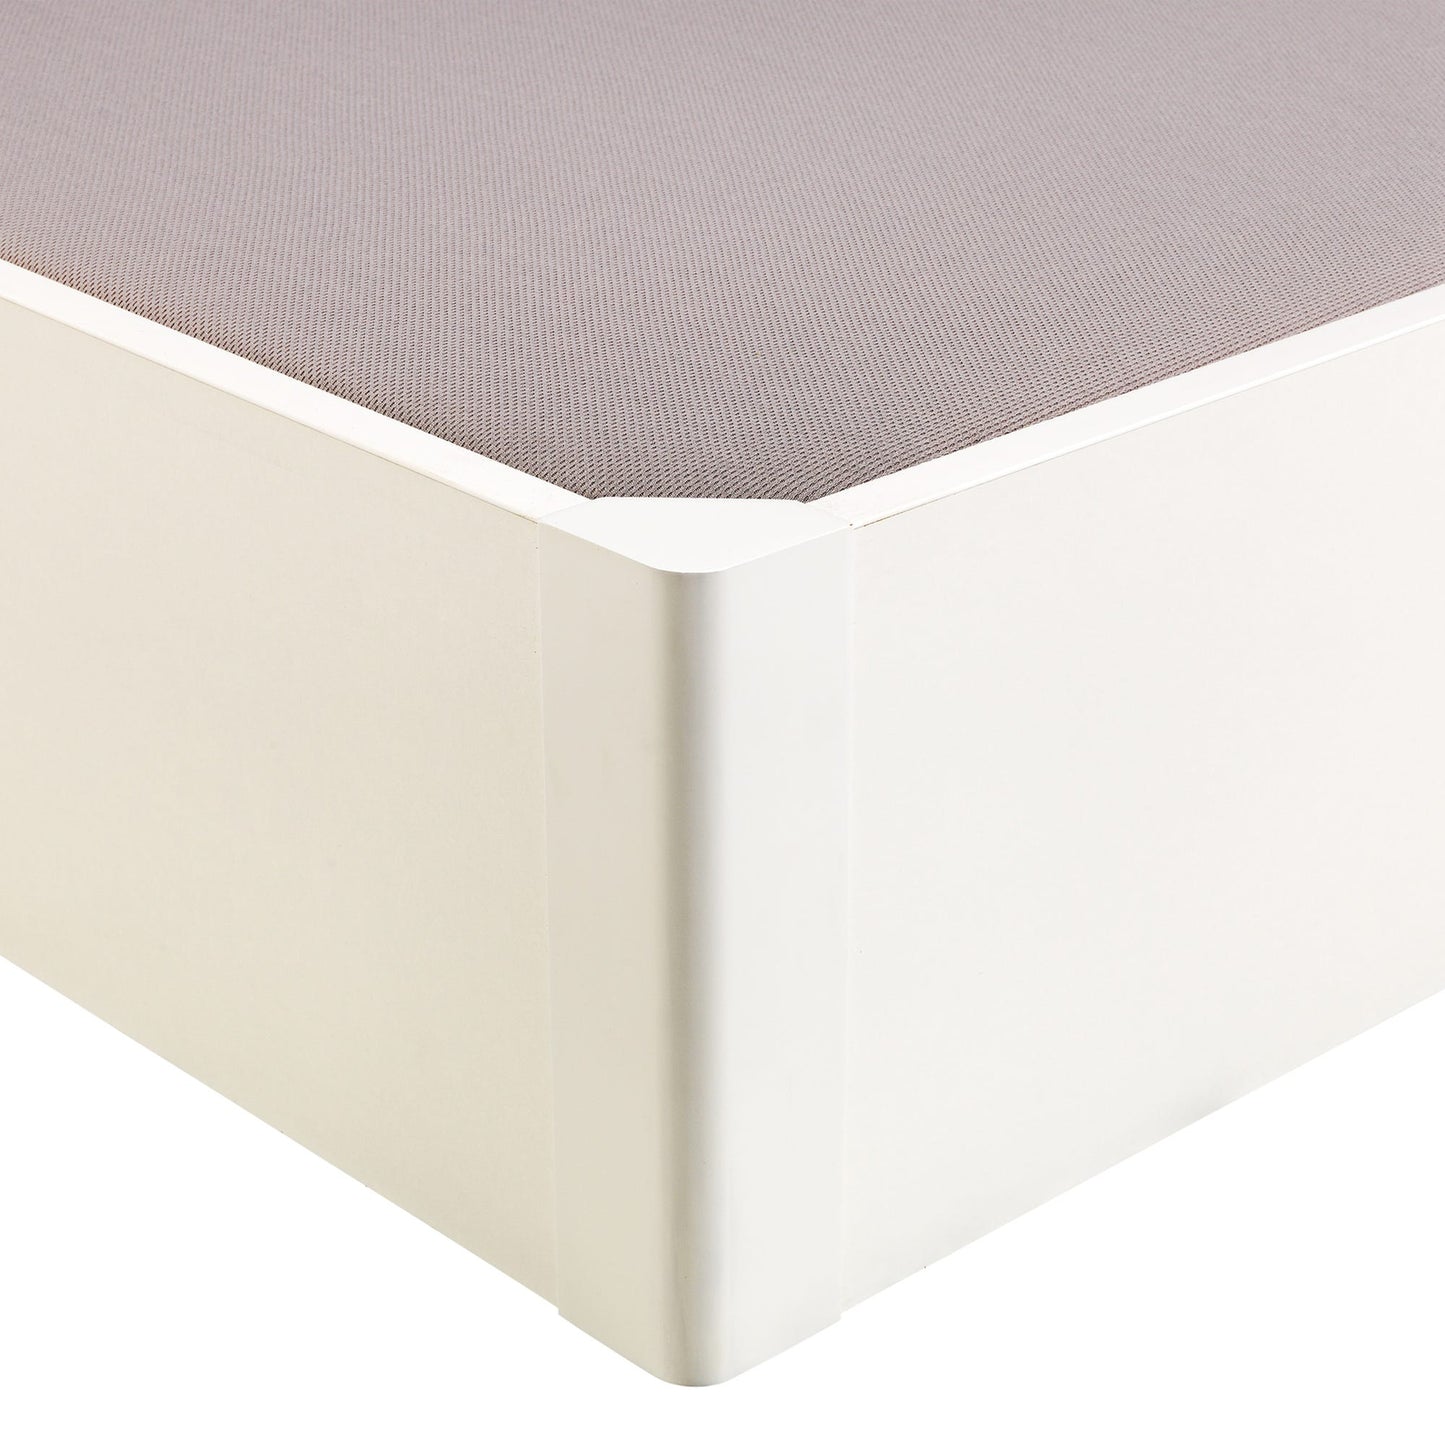 Canapé abatible de madera tapa única de color blanco - DESIGN - 90x182